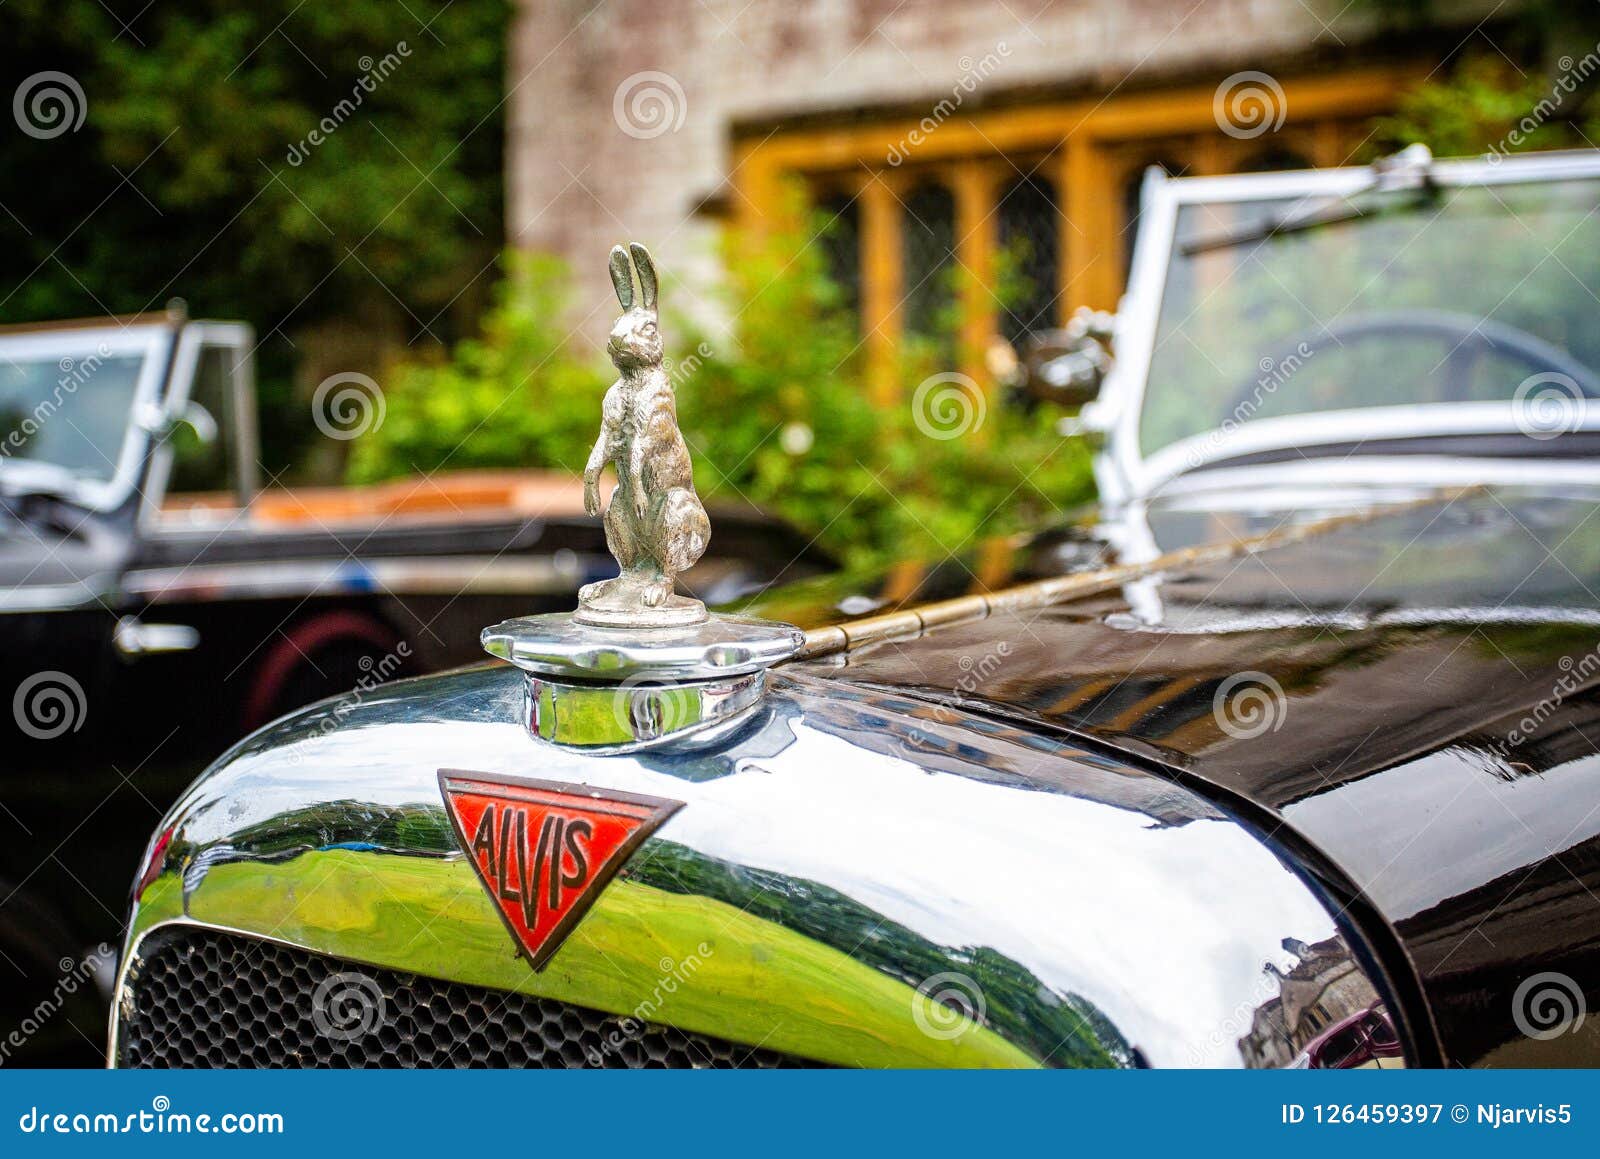 Auto-Emblem - Kaninchen auf einem Oldtimer Alvis Stockfotografie